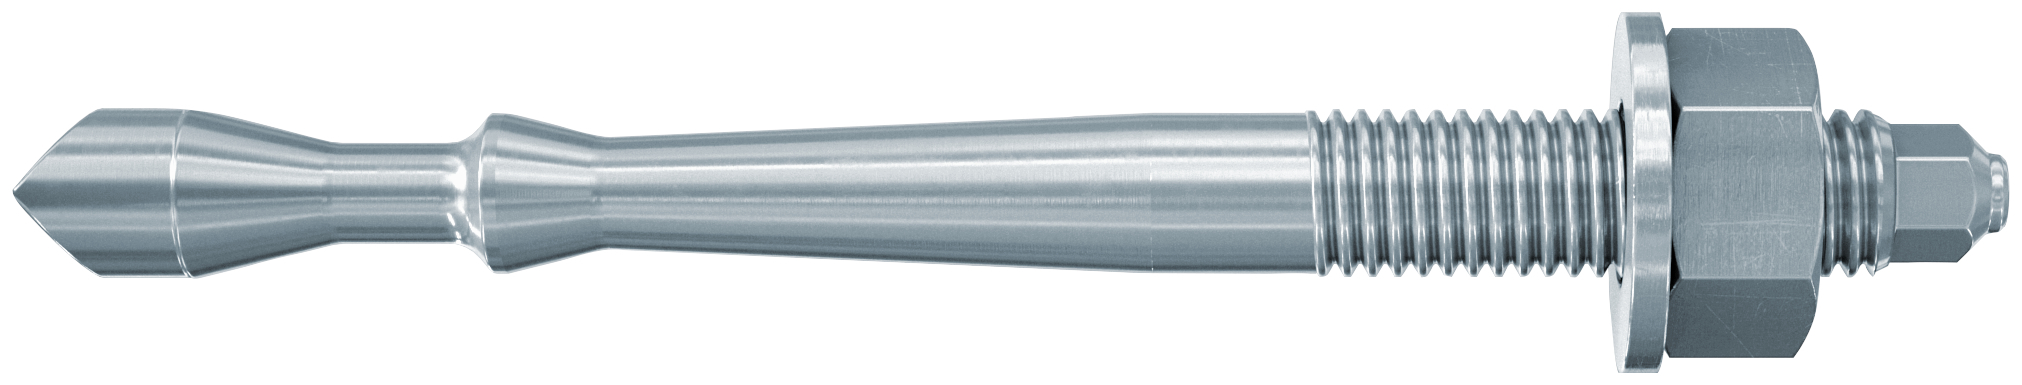 fischer Barra multicono in acciaio FHB II-A S M24x170/50 per ancorante chimico FIS HB (1 Pz.) Barra multicono corta in acciaio zincato classe 8.8. Massime prestazioni a trazione in calcestruzzo fessurato e a ridotte distanze dai bordi..